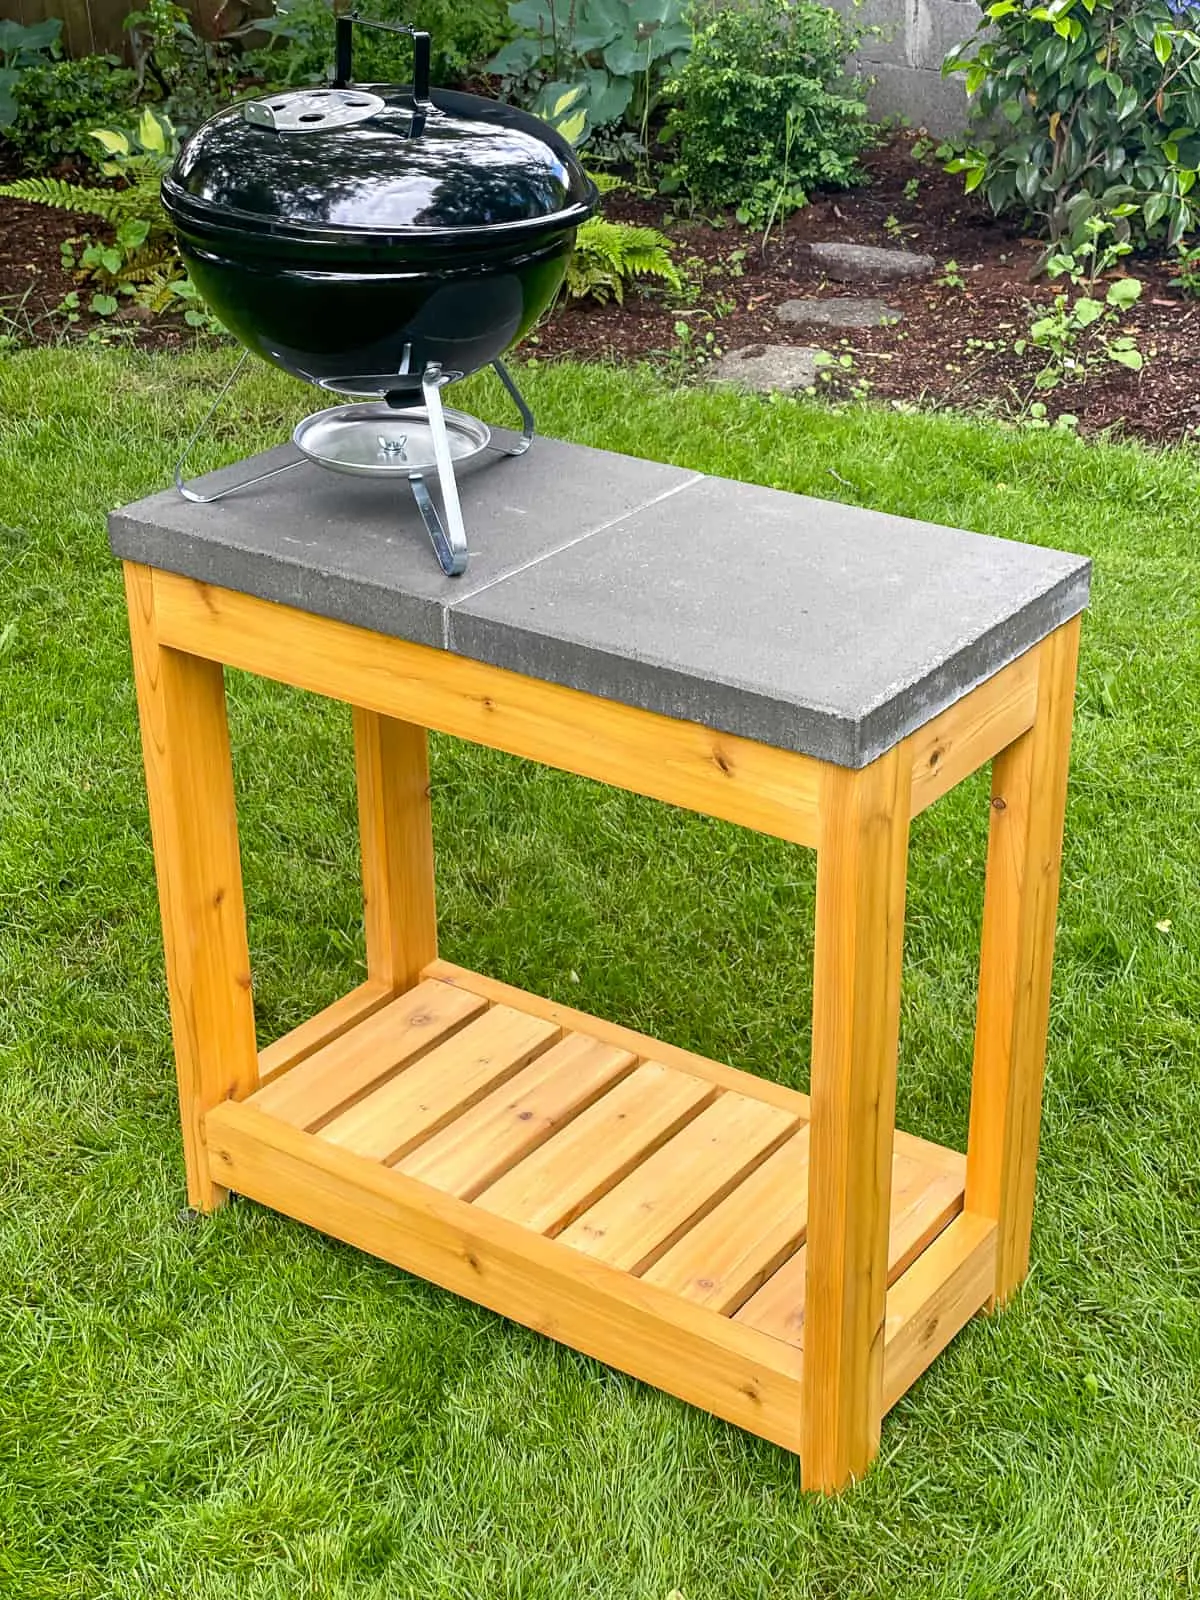 DIY grill station made of cedar